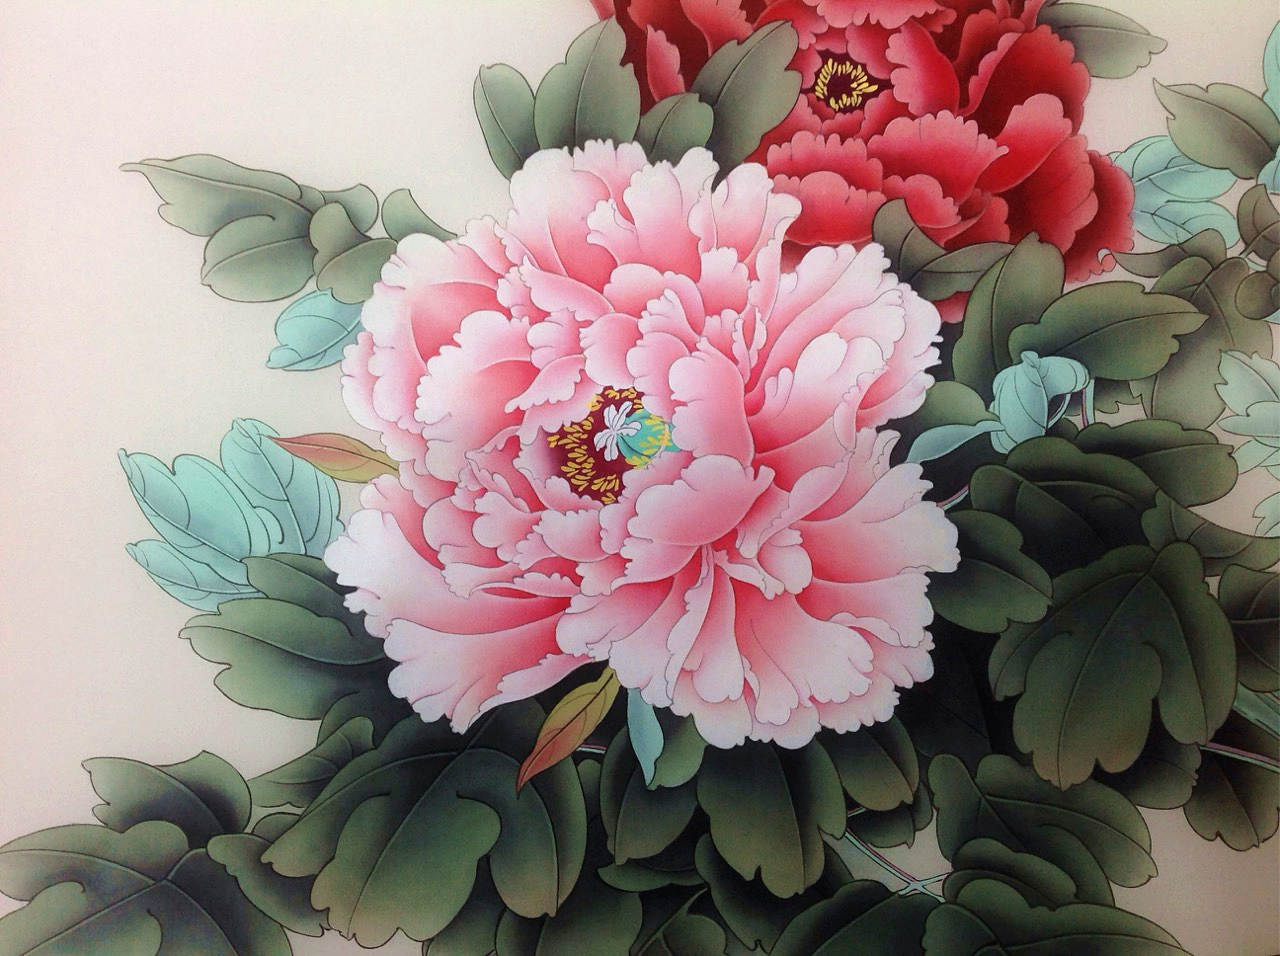 1/ 12 牡丹是国画花卉中经常描绘的题材,历代诗人画家有着无数赞美